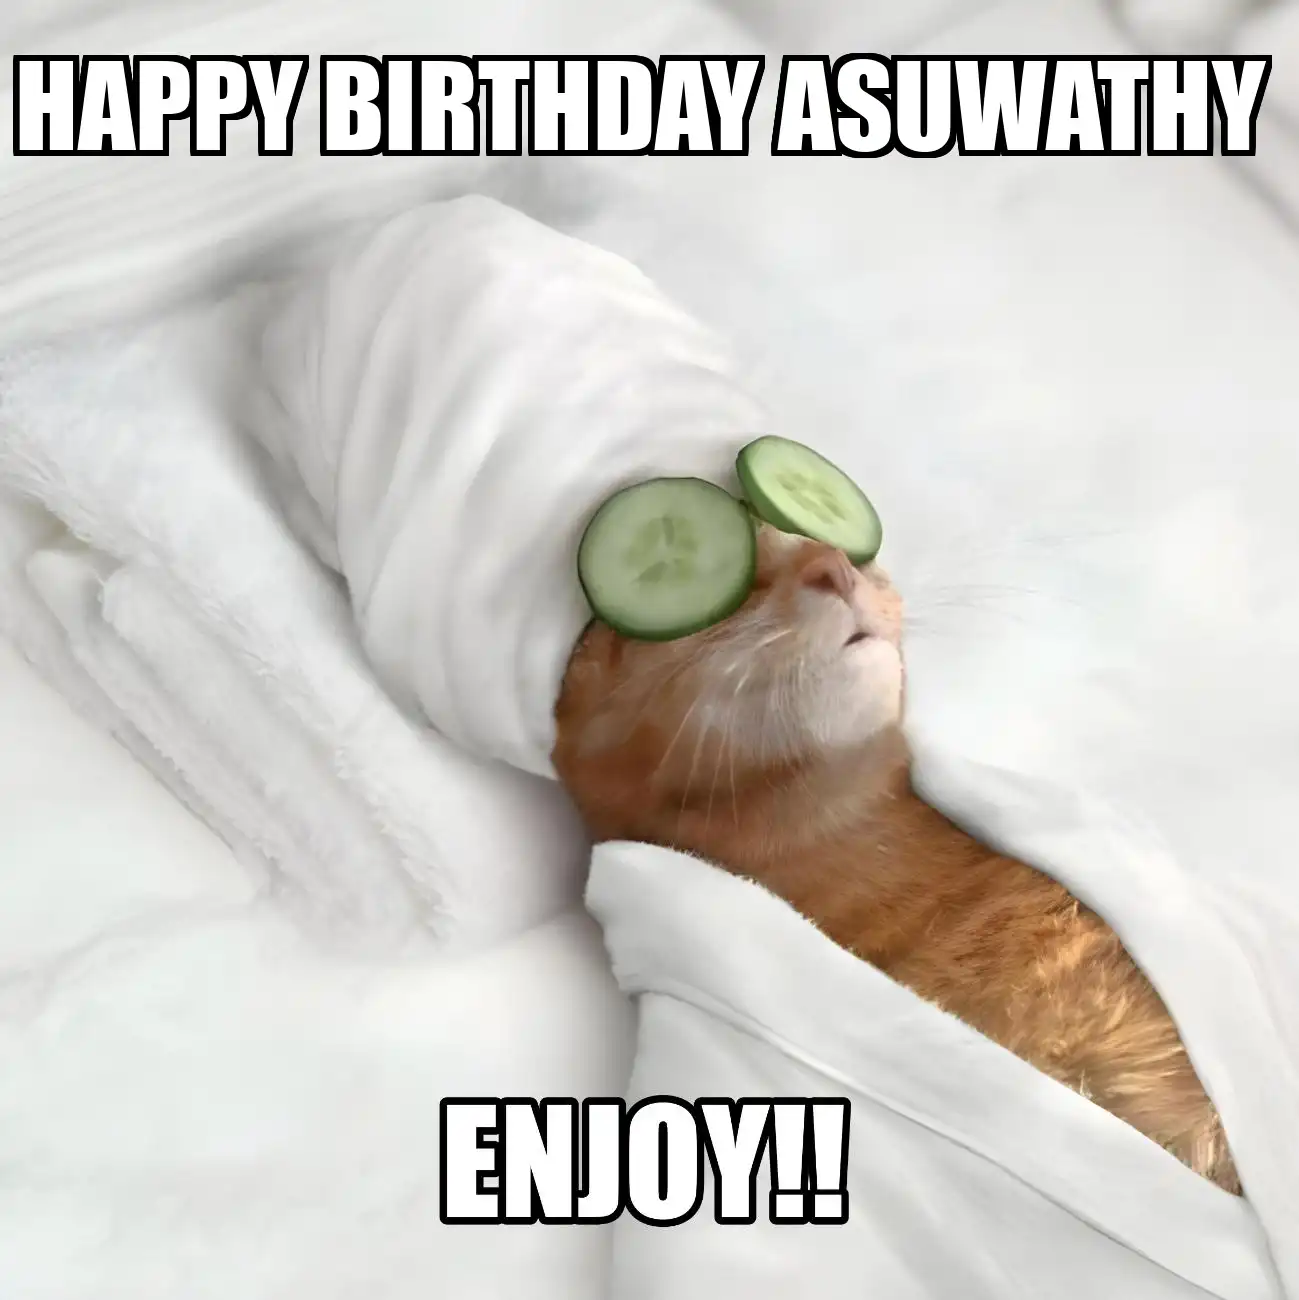 Happy Birthday Asuwathy Enjoy Cat Meme